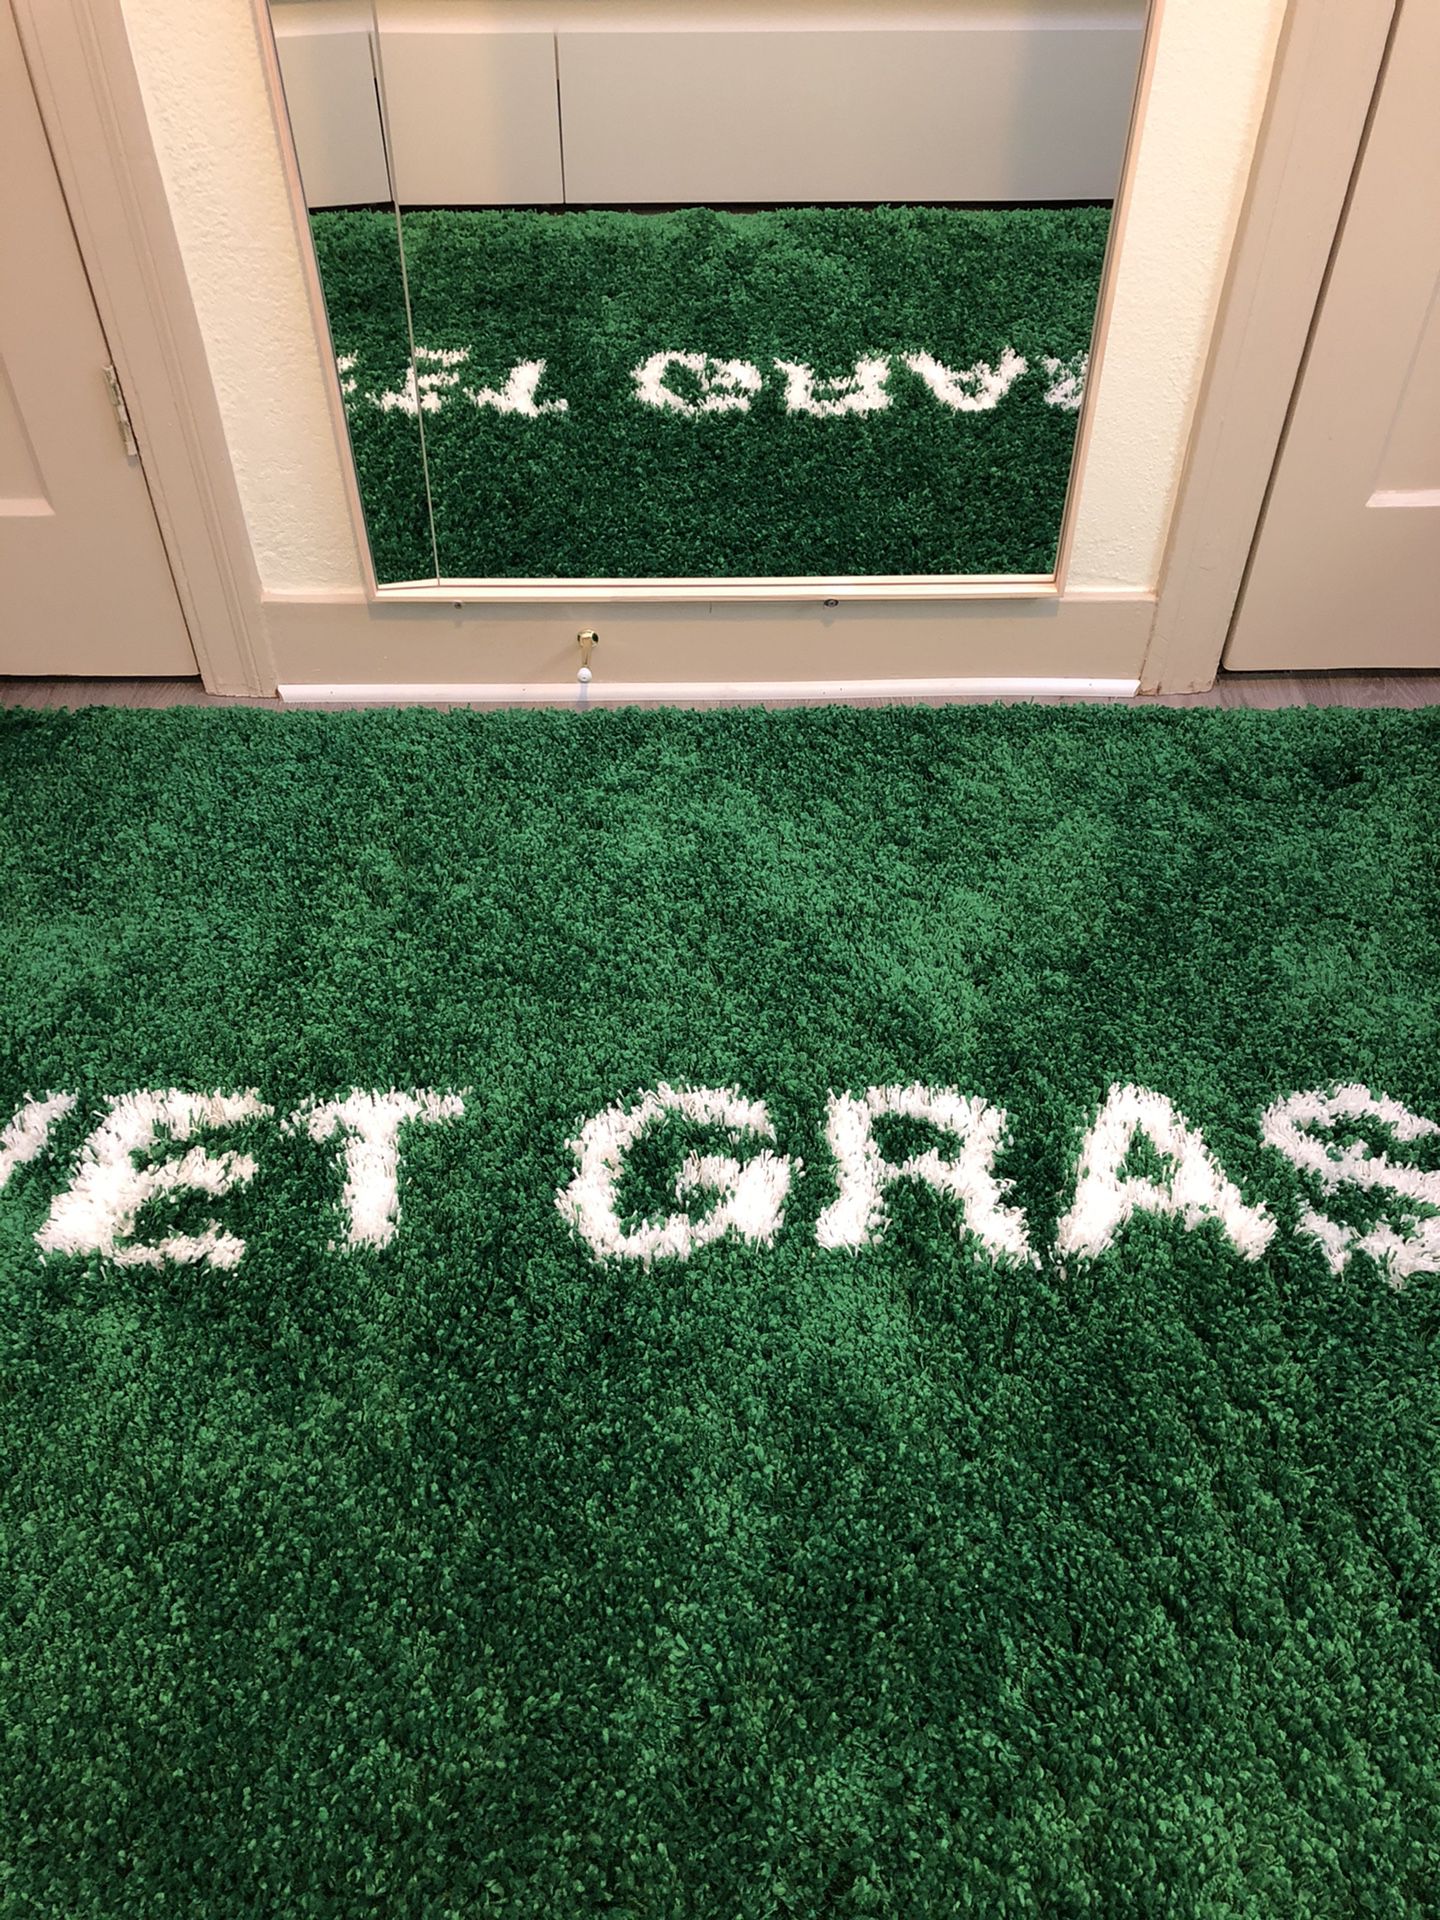 WET GRASS Carpet